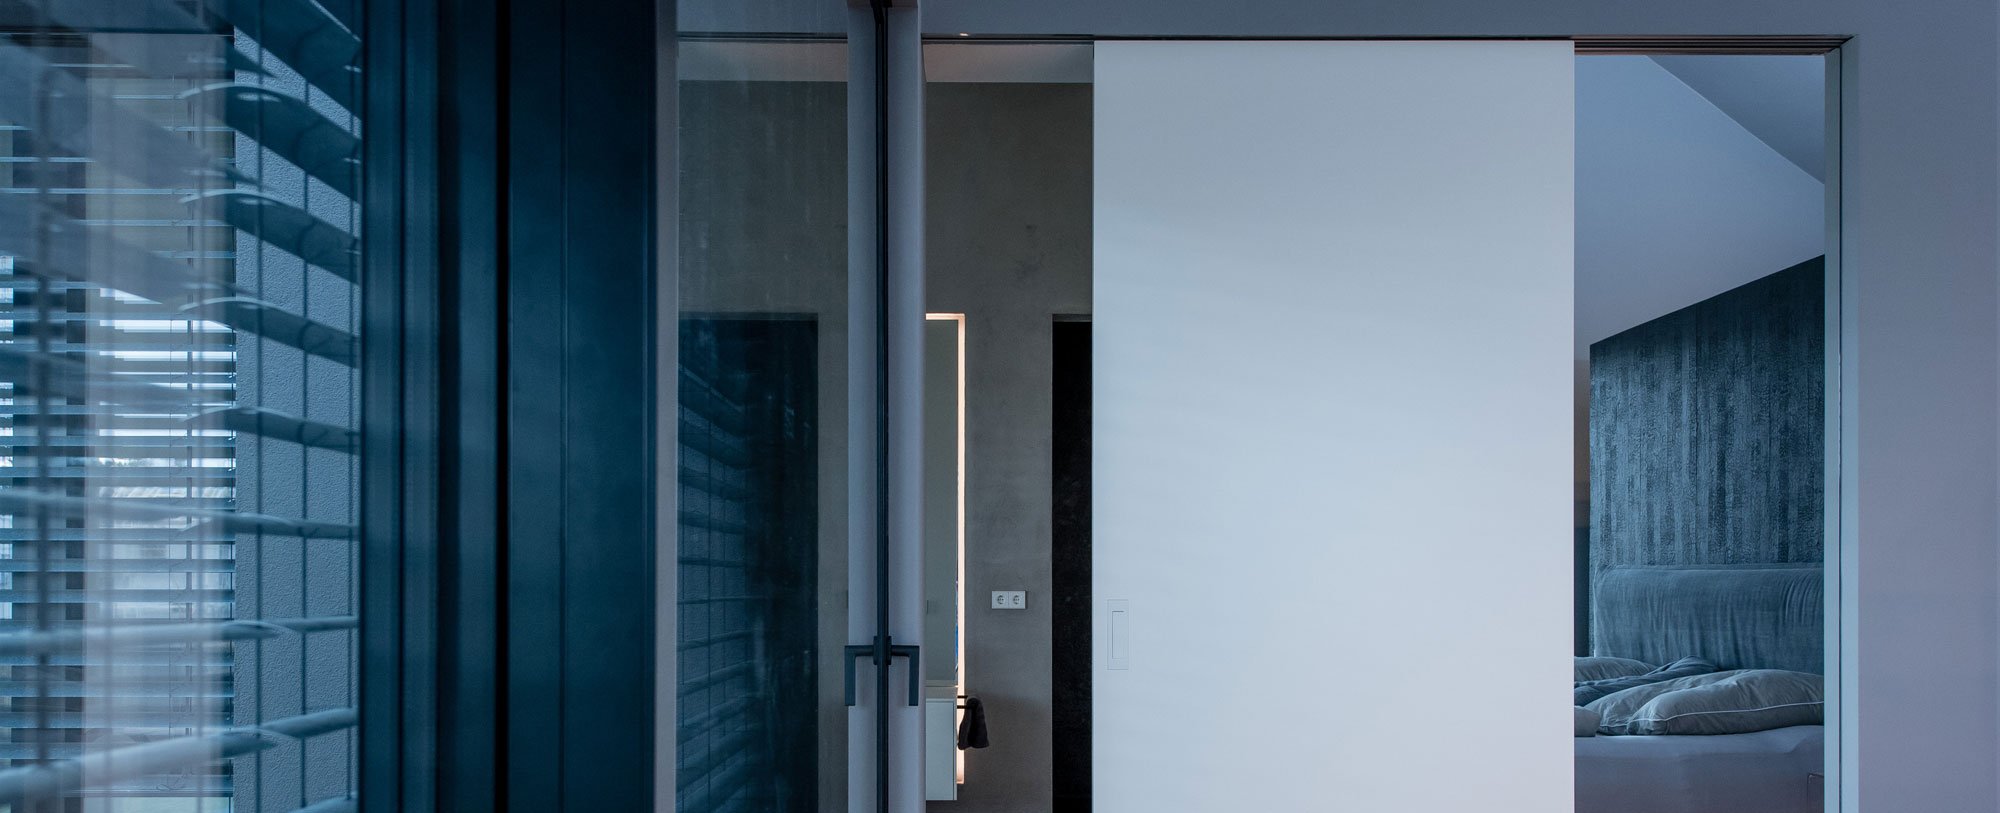 Schiebetür als Raumtrenner: Die Tür kann flexibel vor das Bad oder Schlafzimmer geschoben werden